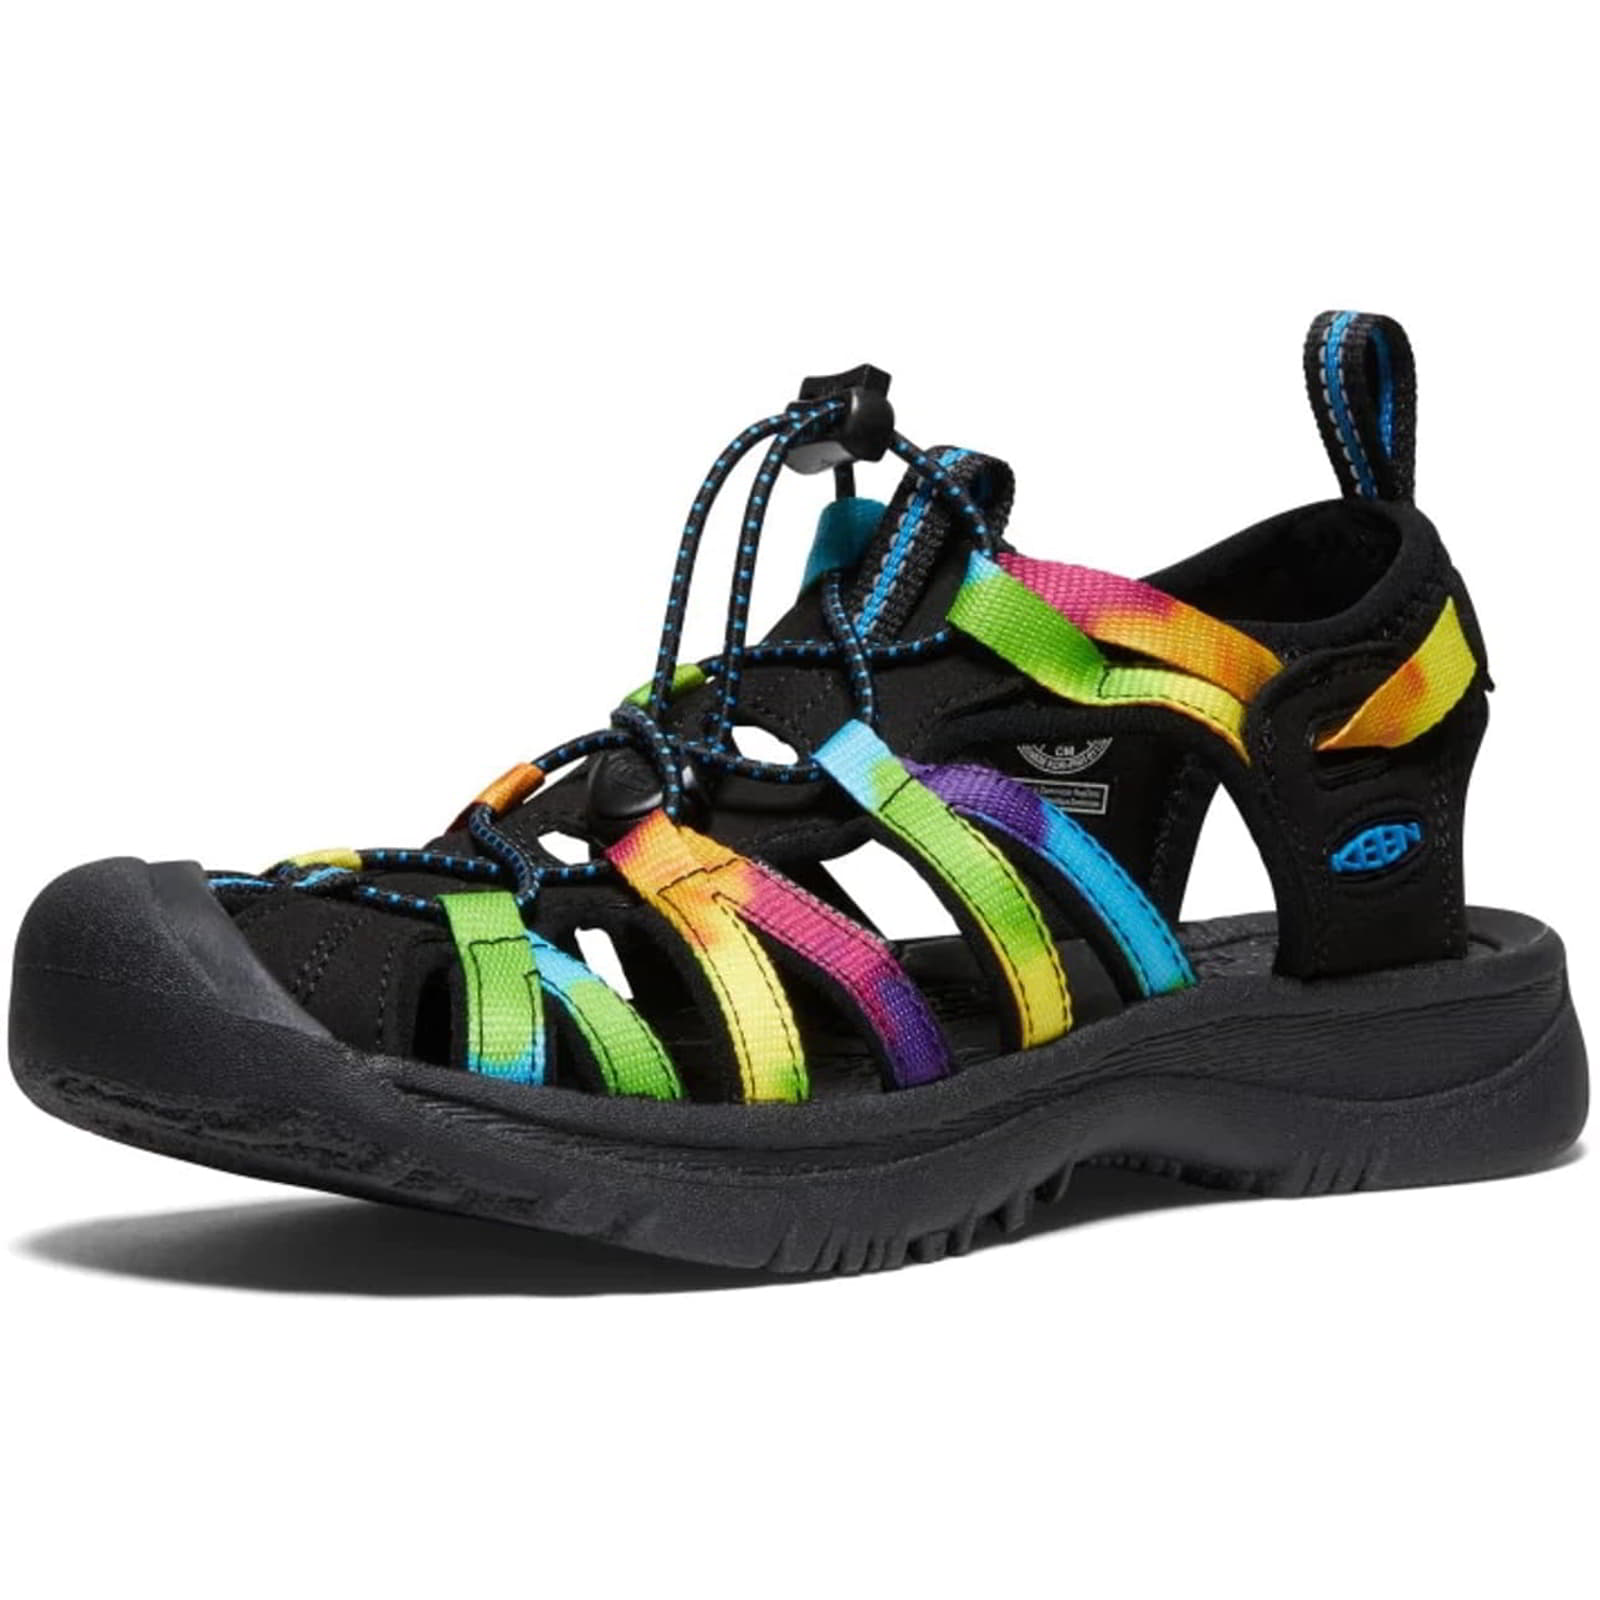 Keen Whisper Women's Waterproof Walking Hiking Sandals - UK 6.5 / 39.5 / US 9